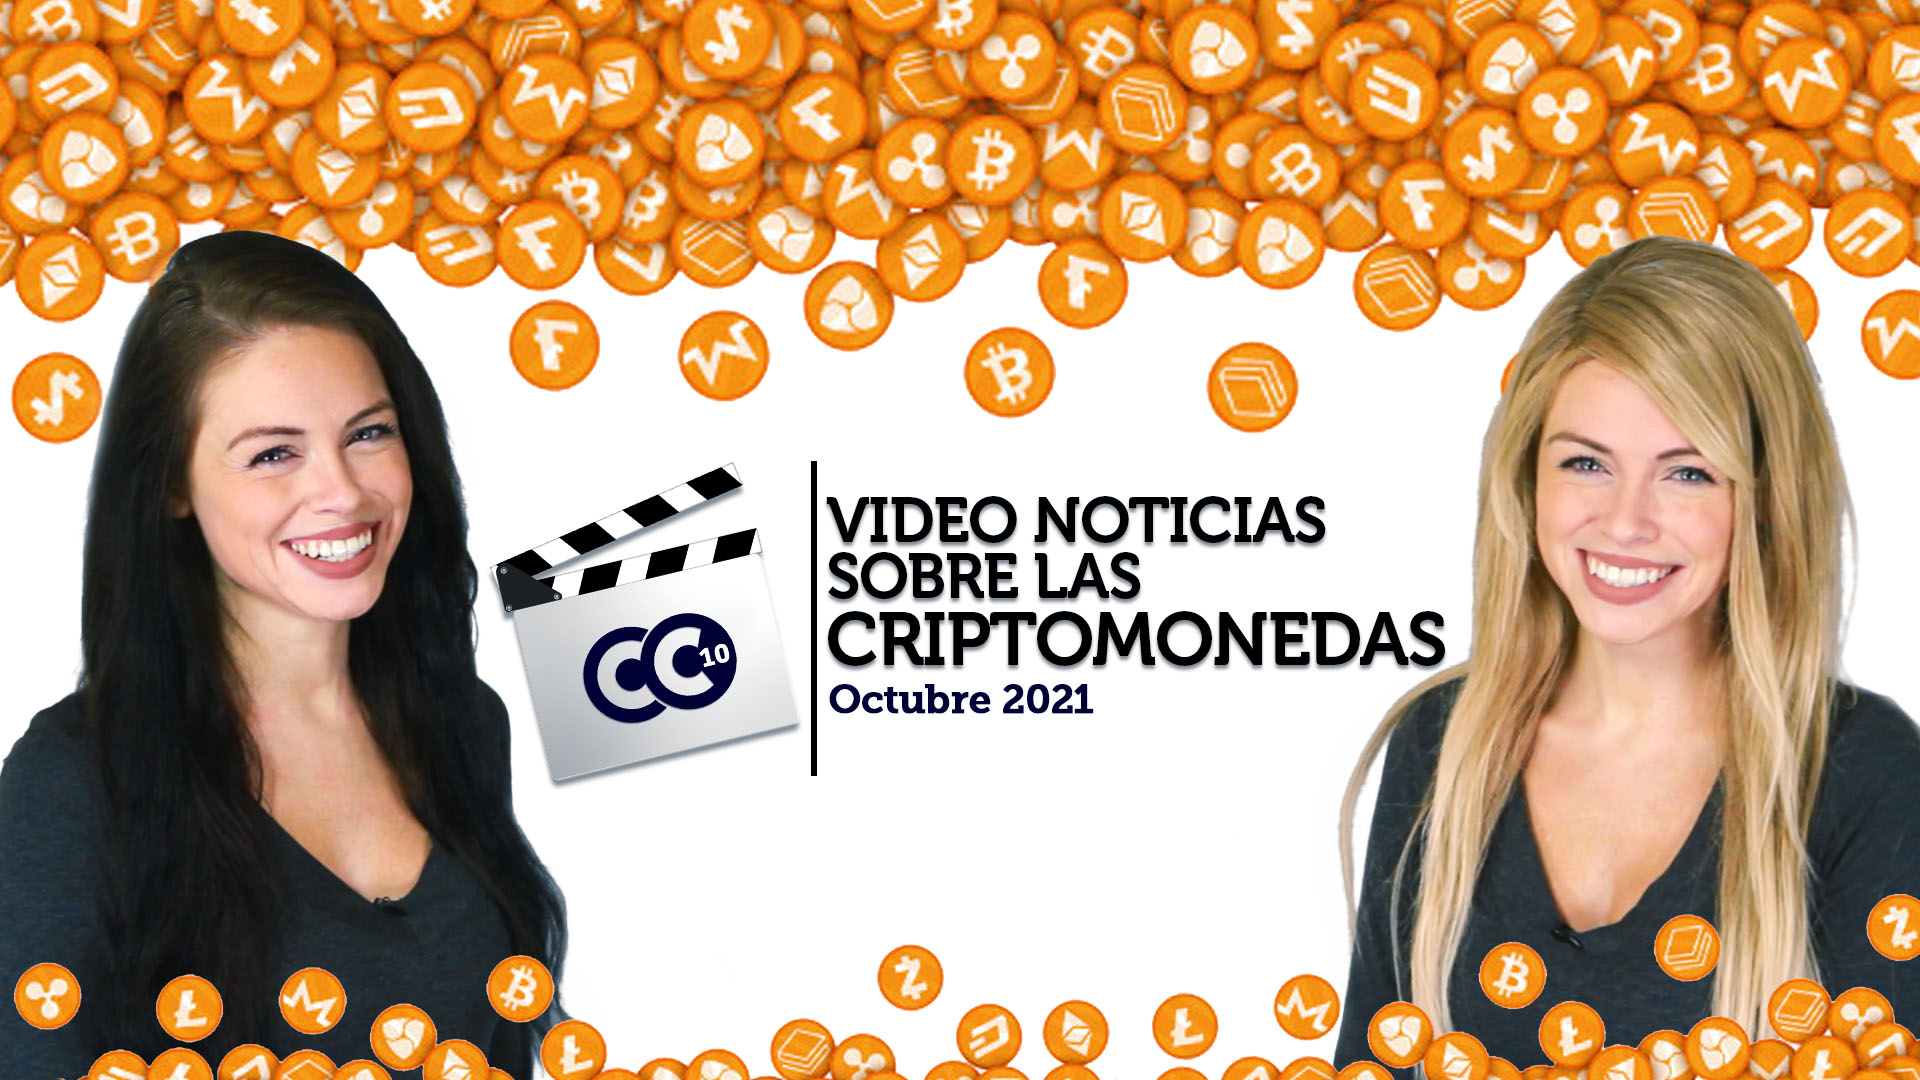 Video Noticias sobre las criptomonedas - Octubre 2021